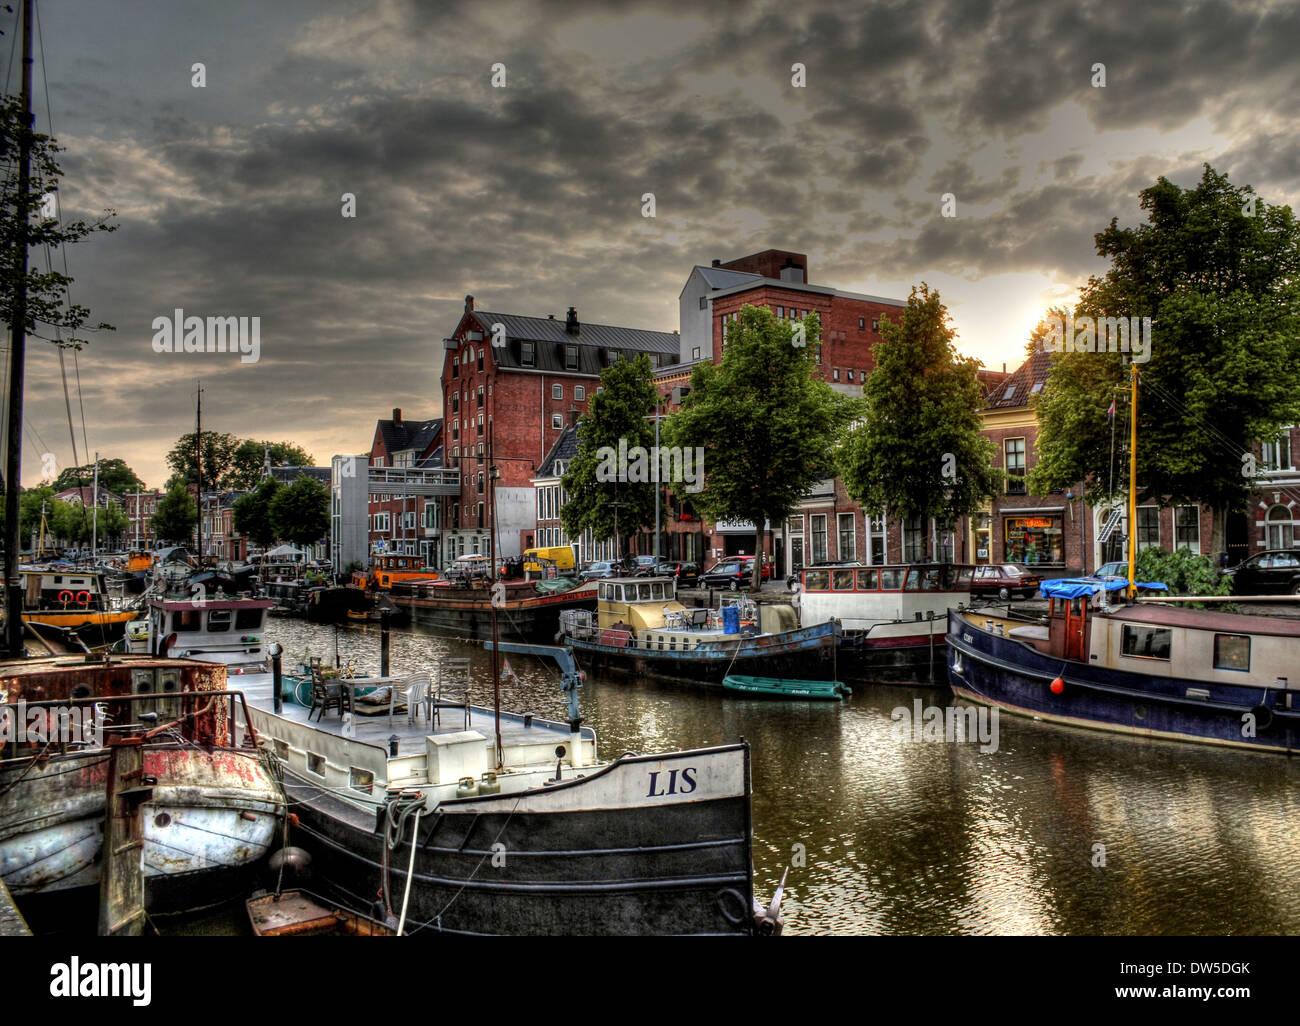 Les entrepôts et les navires à voile le long des canaux à Noorderhaven (nord du port) de Groningen, Pays-Bas, HDR-edit Banque D'Images